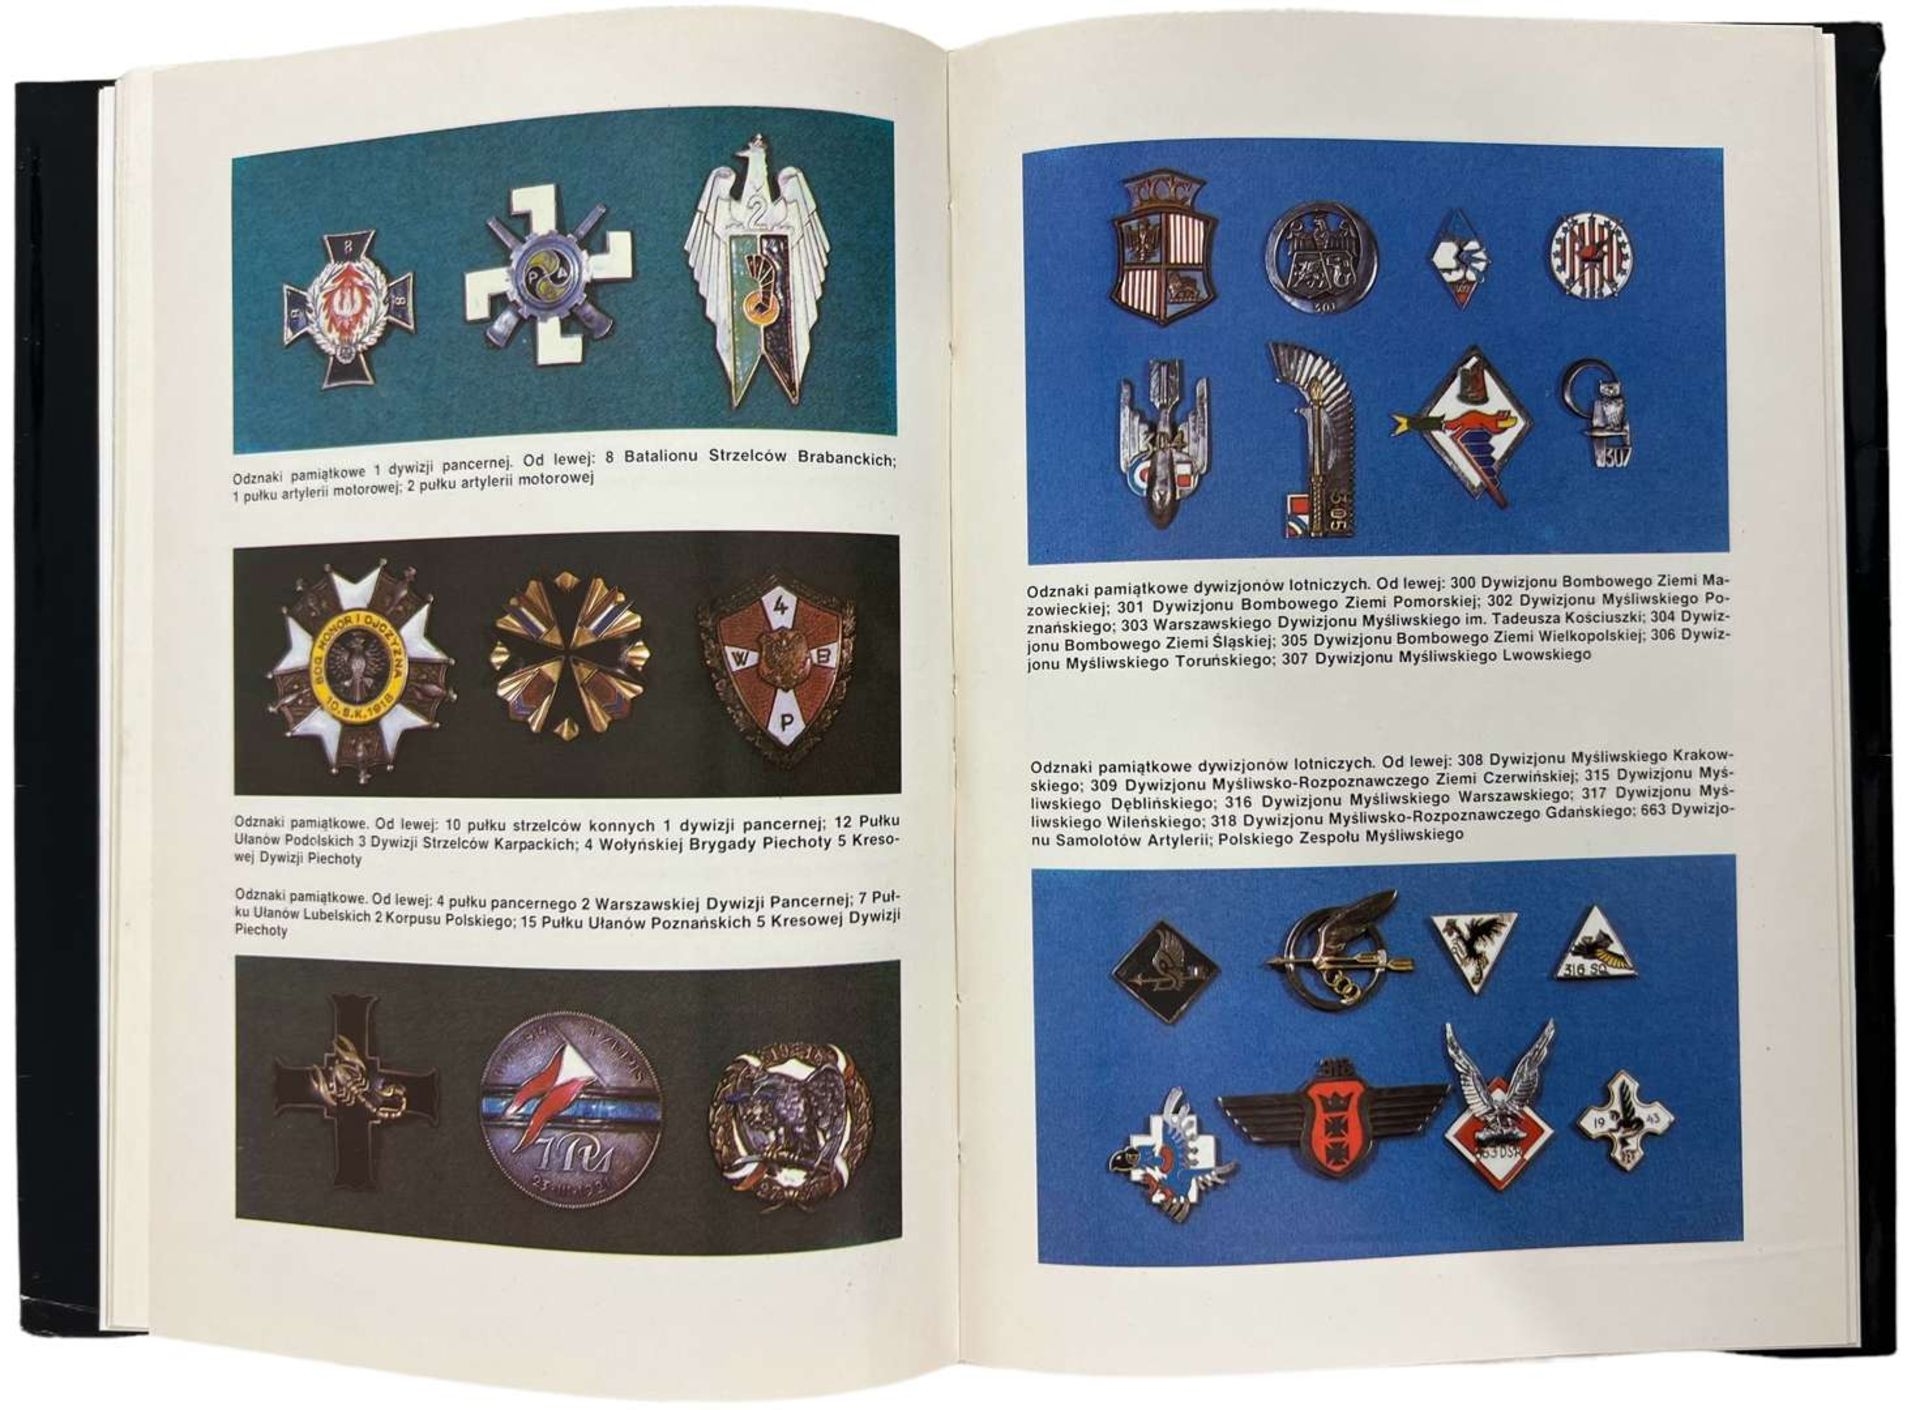 Polish Book “Symbole Wojskowe Polskich Sił Zbrojnych na Zachodzie” Jerzy Margrabia - Image 2 of 2